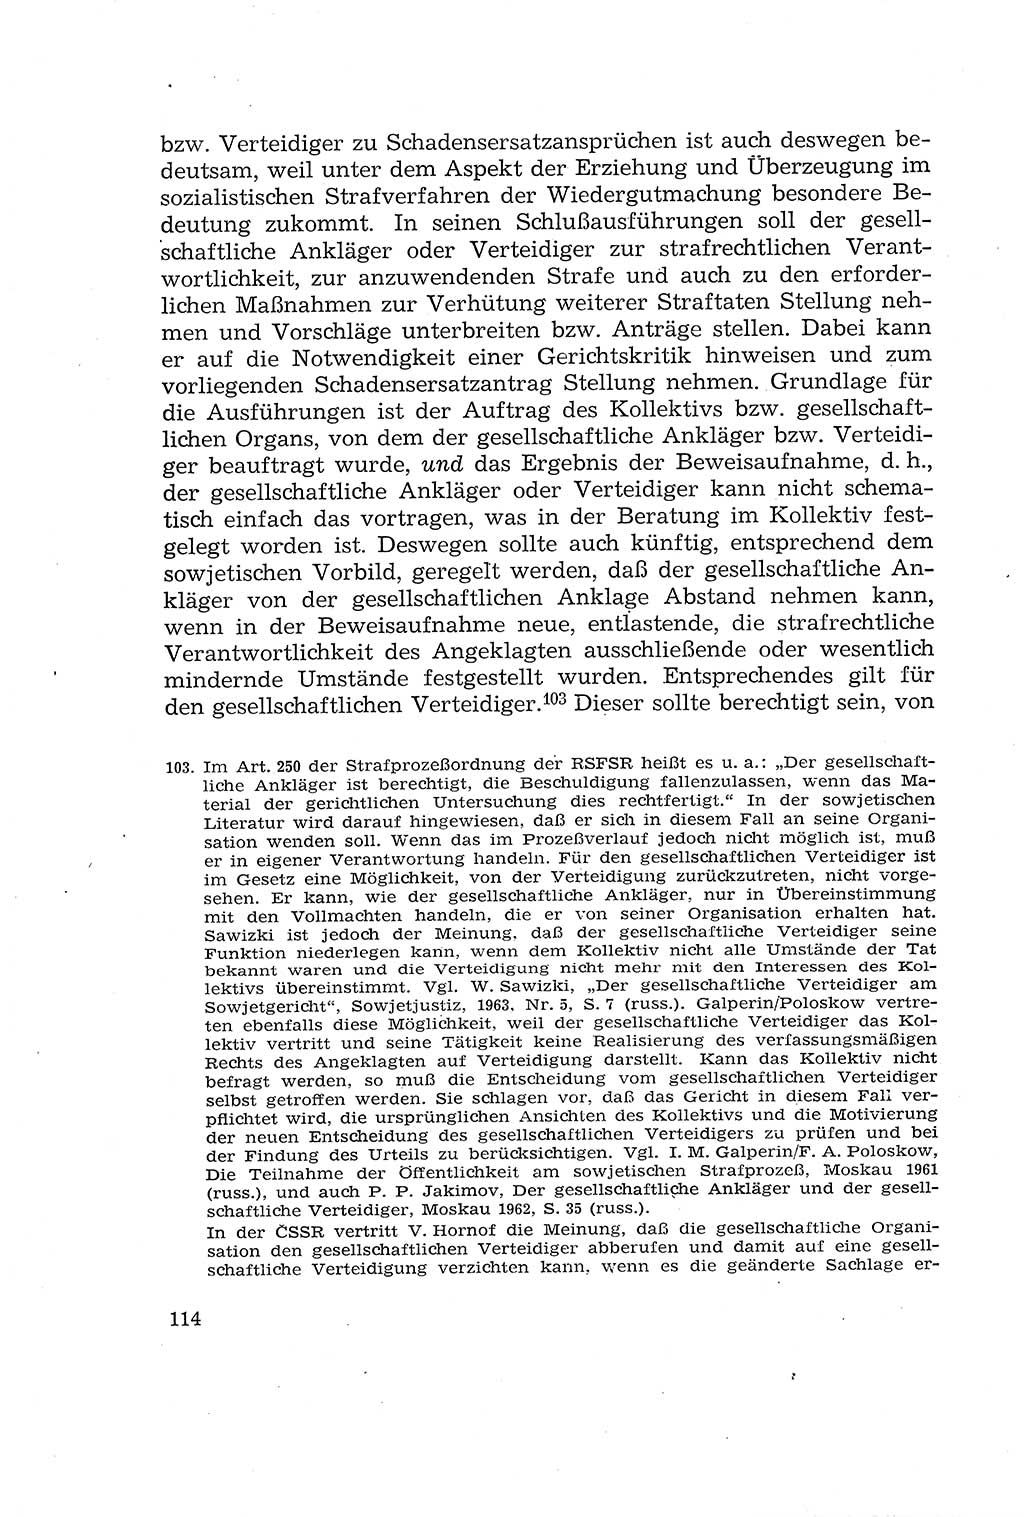 Die Mitwirkung der Werktätigen am Strafverfahren [Deutsche Demokratische Republik (DDR)] 1966, Seite 114 (Mitw. Str.-Verf. DDR 1966, S. 114)